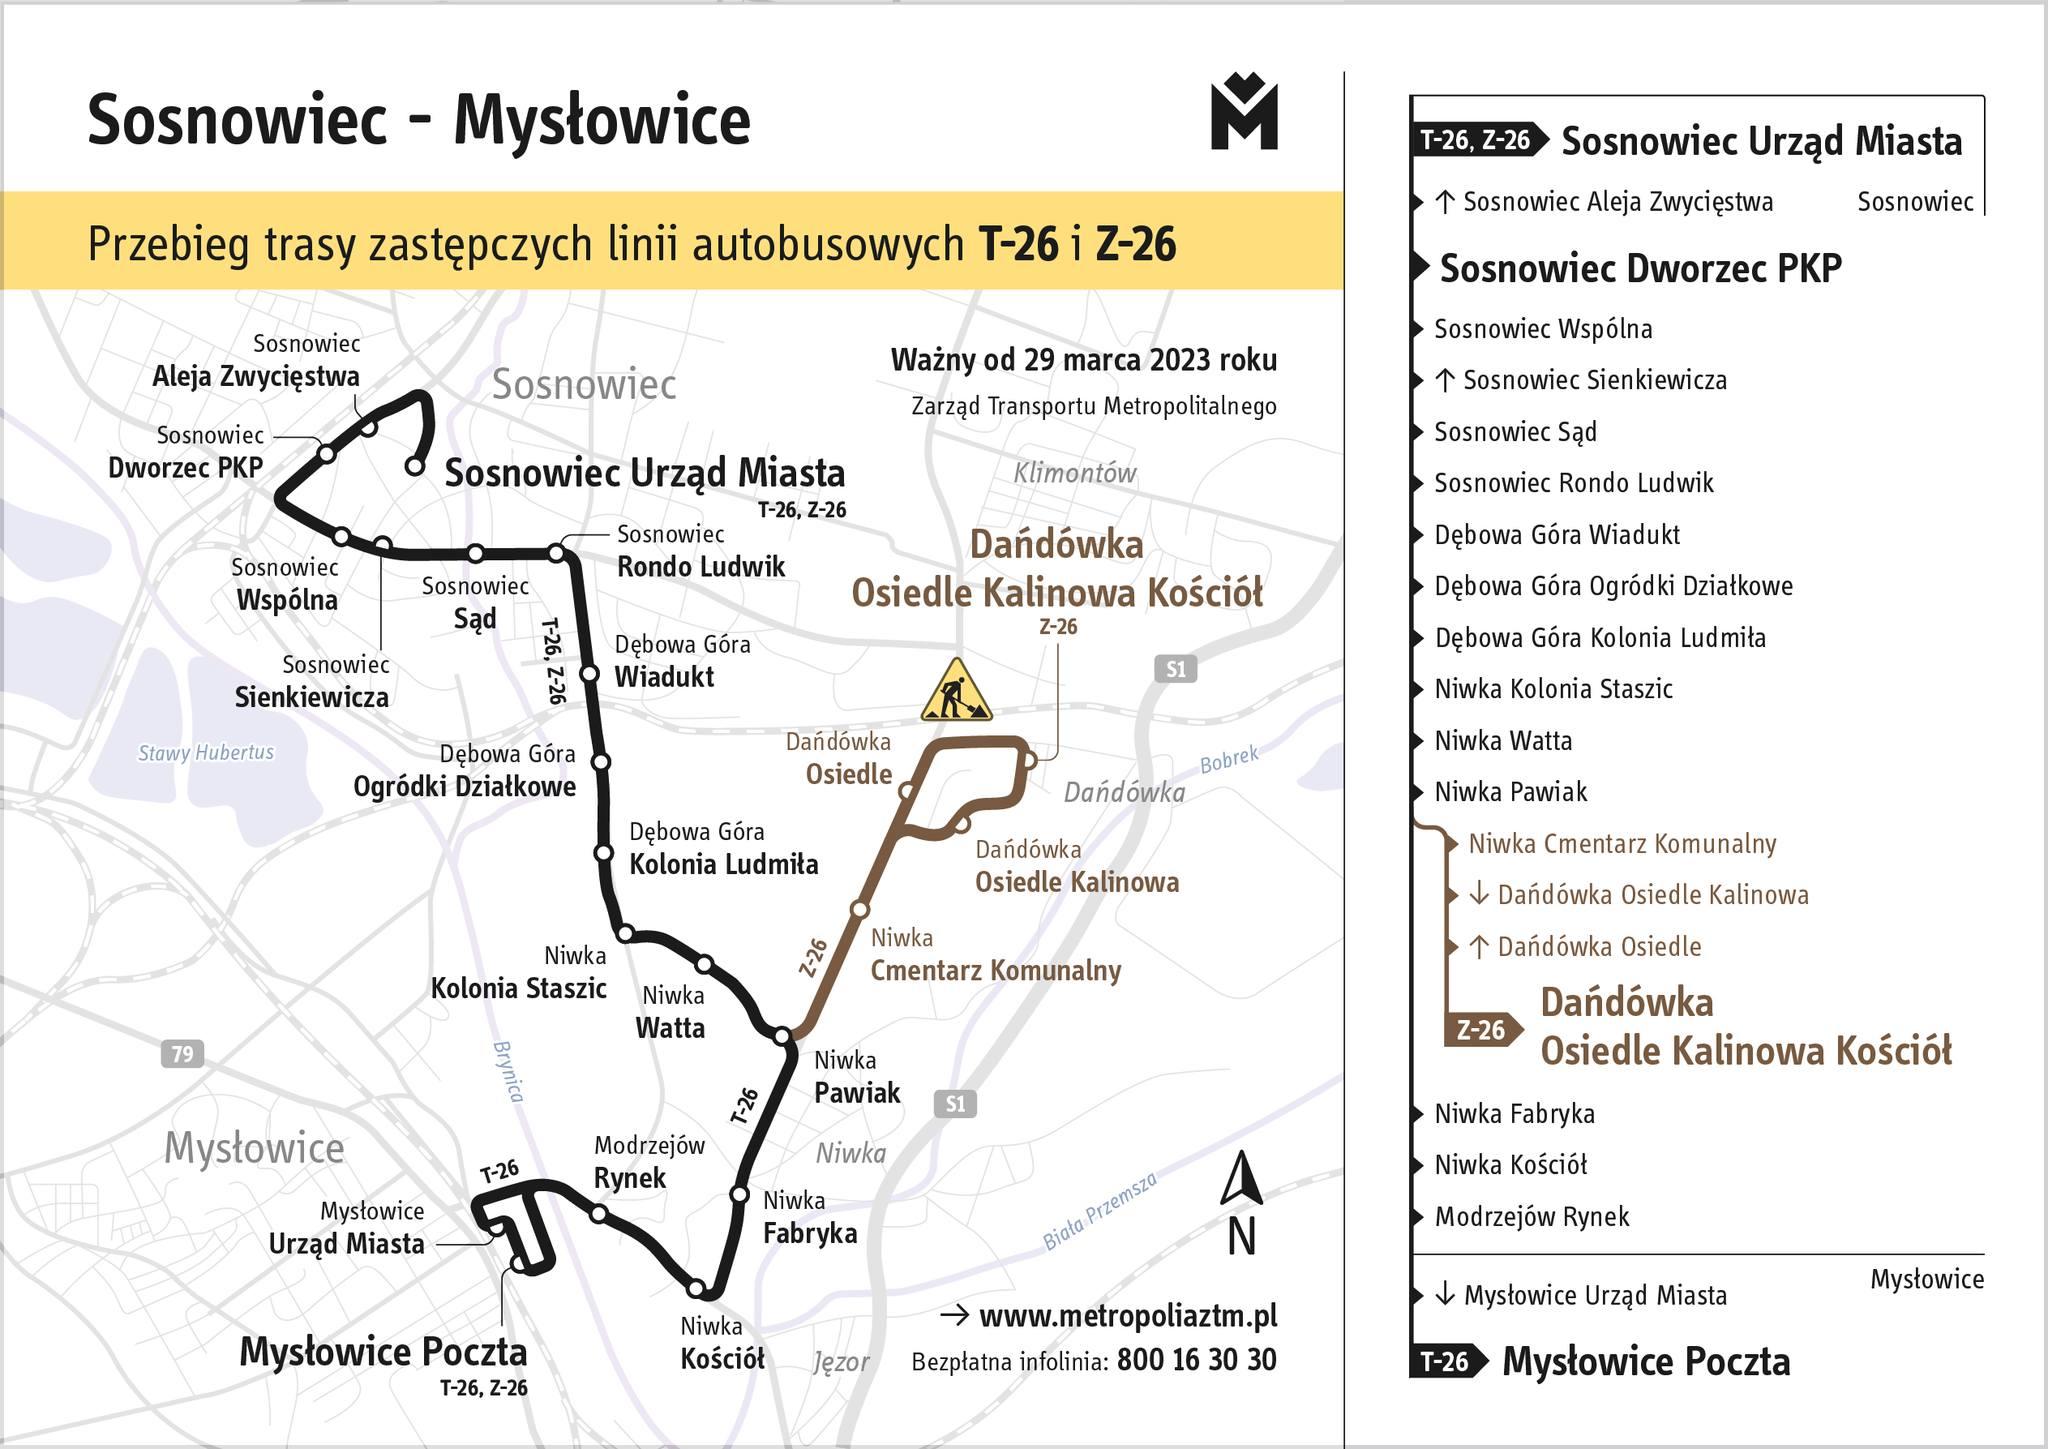 Sosnowiec - Mysłowice